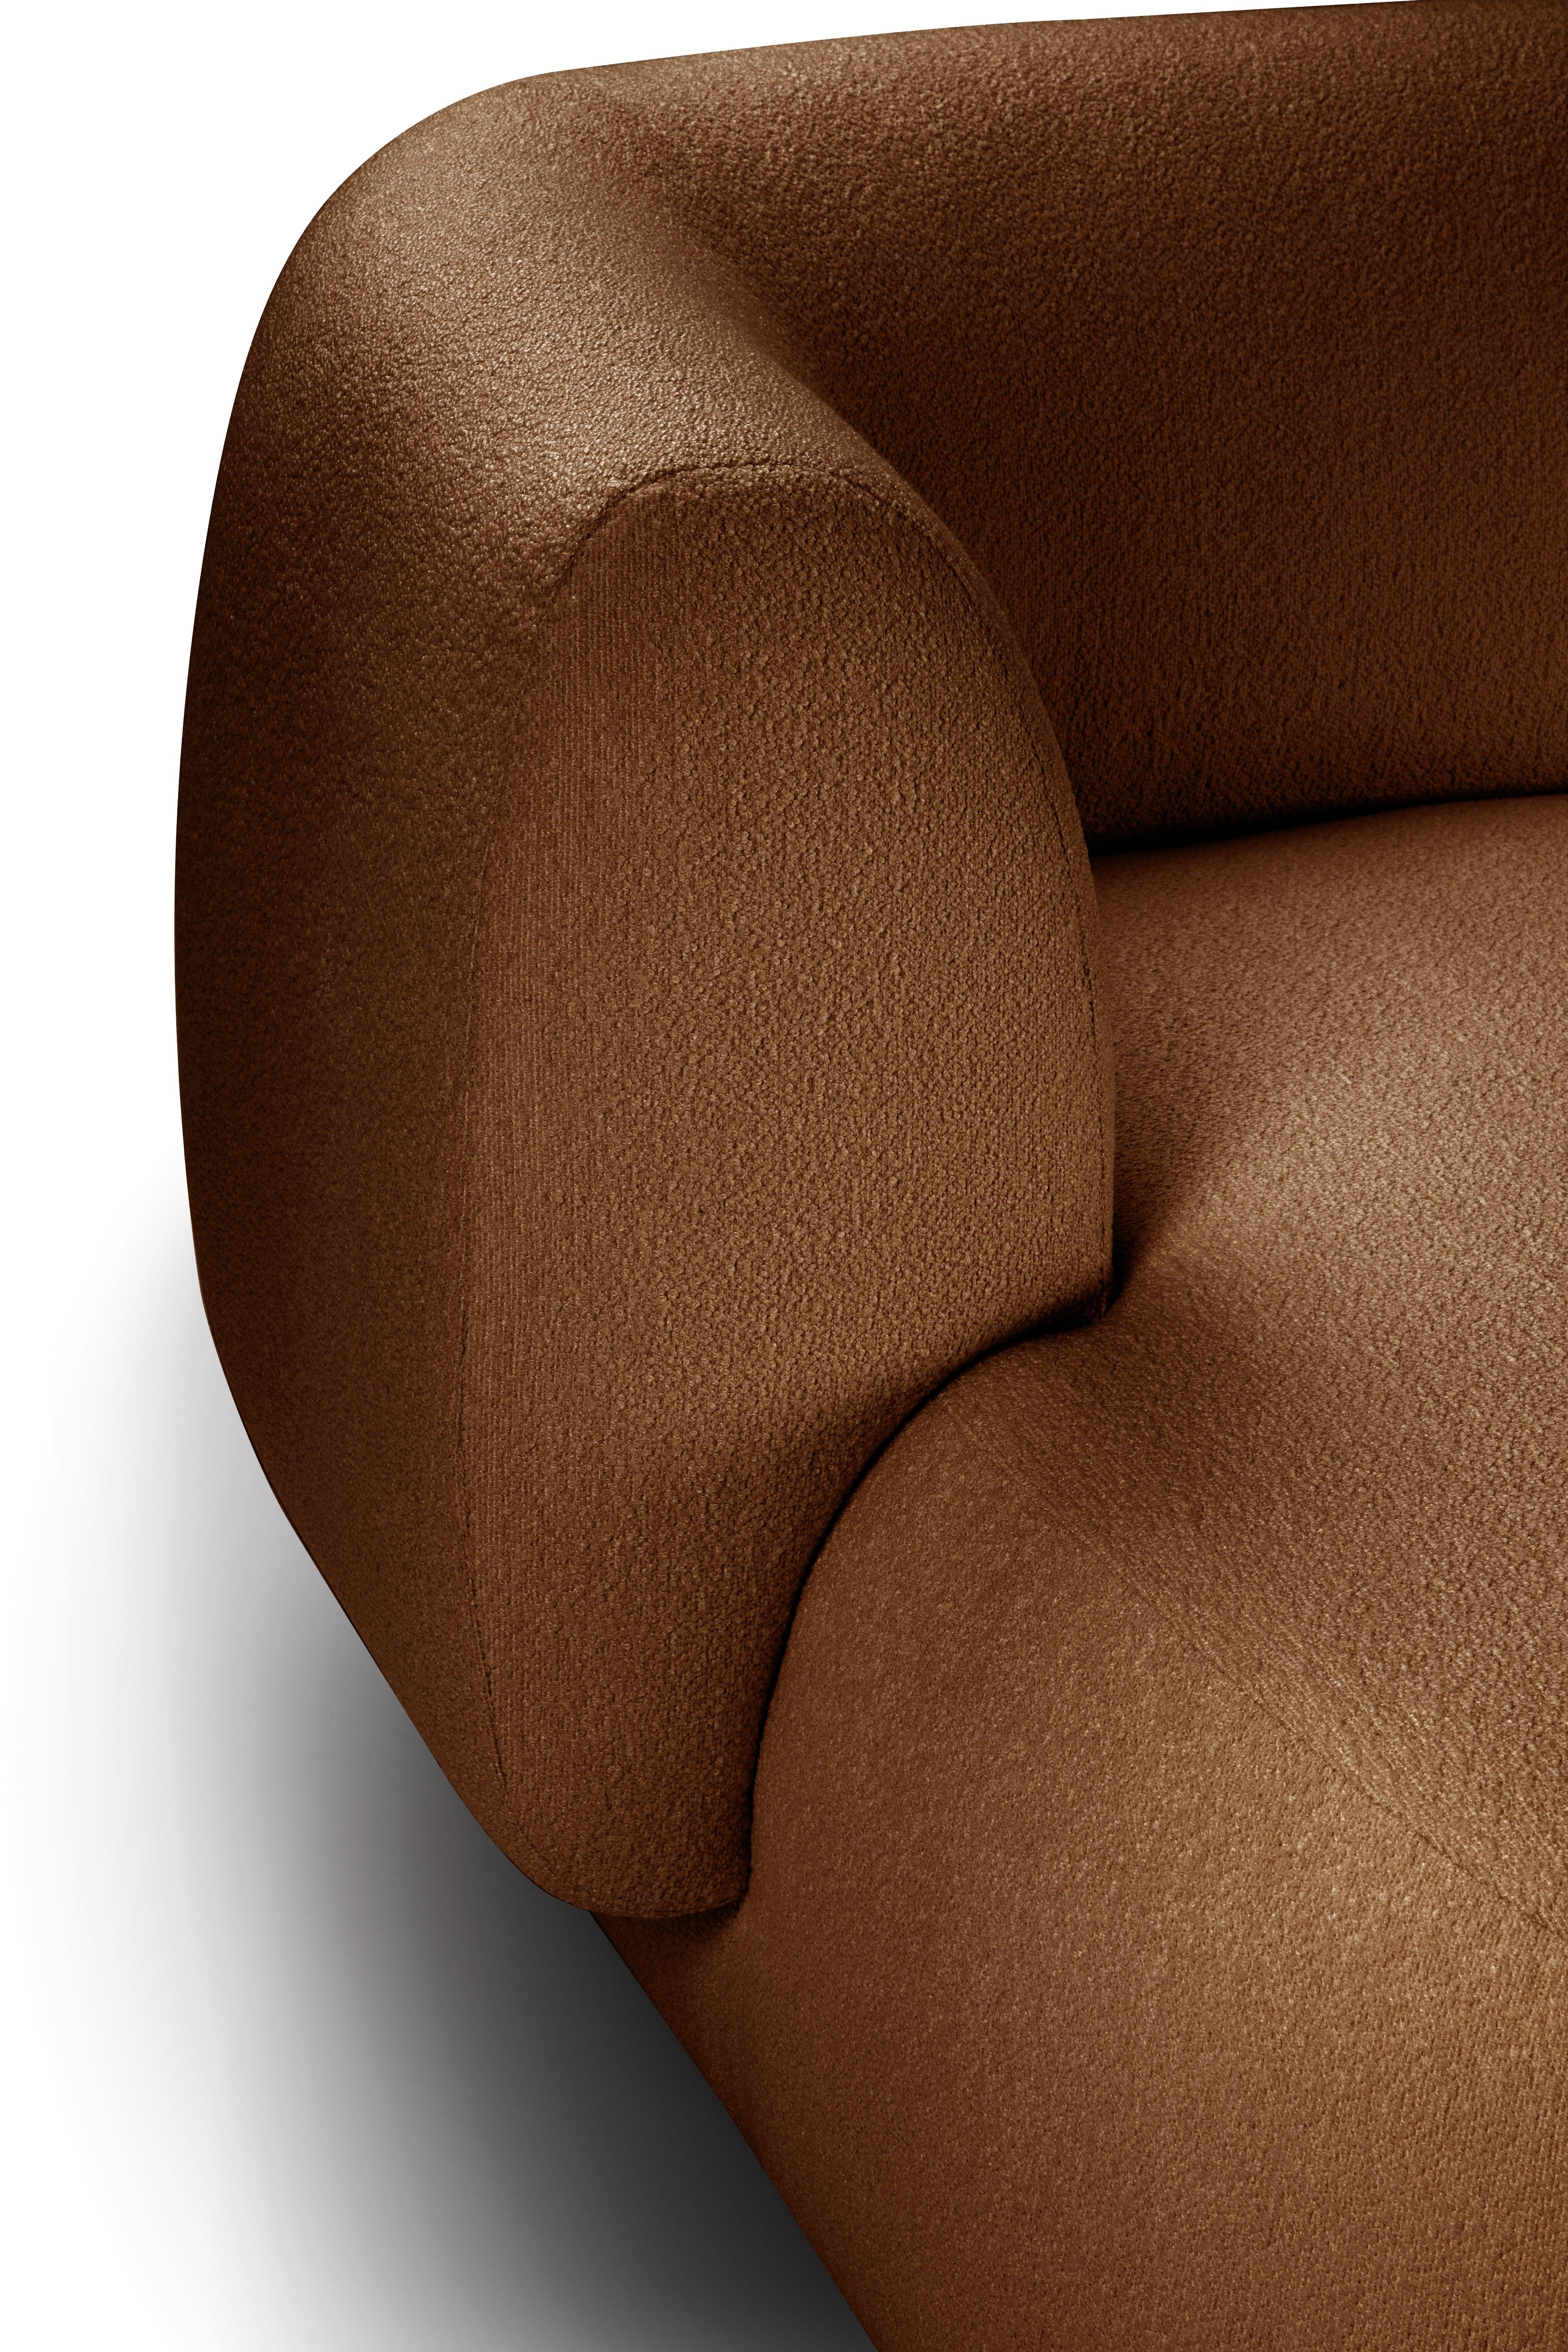 Das Sofa Hug zeichnet sich durch klare, schlichte Linien und ein markantes Armlehnendetail aus.
Die Armlehne, die das Sitzkissen zur Hälfte überlappt, schafft ein ineinandergreifendes Detail zwischen den beiden Elementen, während die Polsterung,